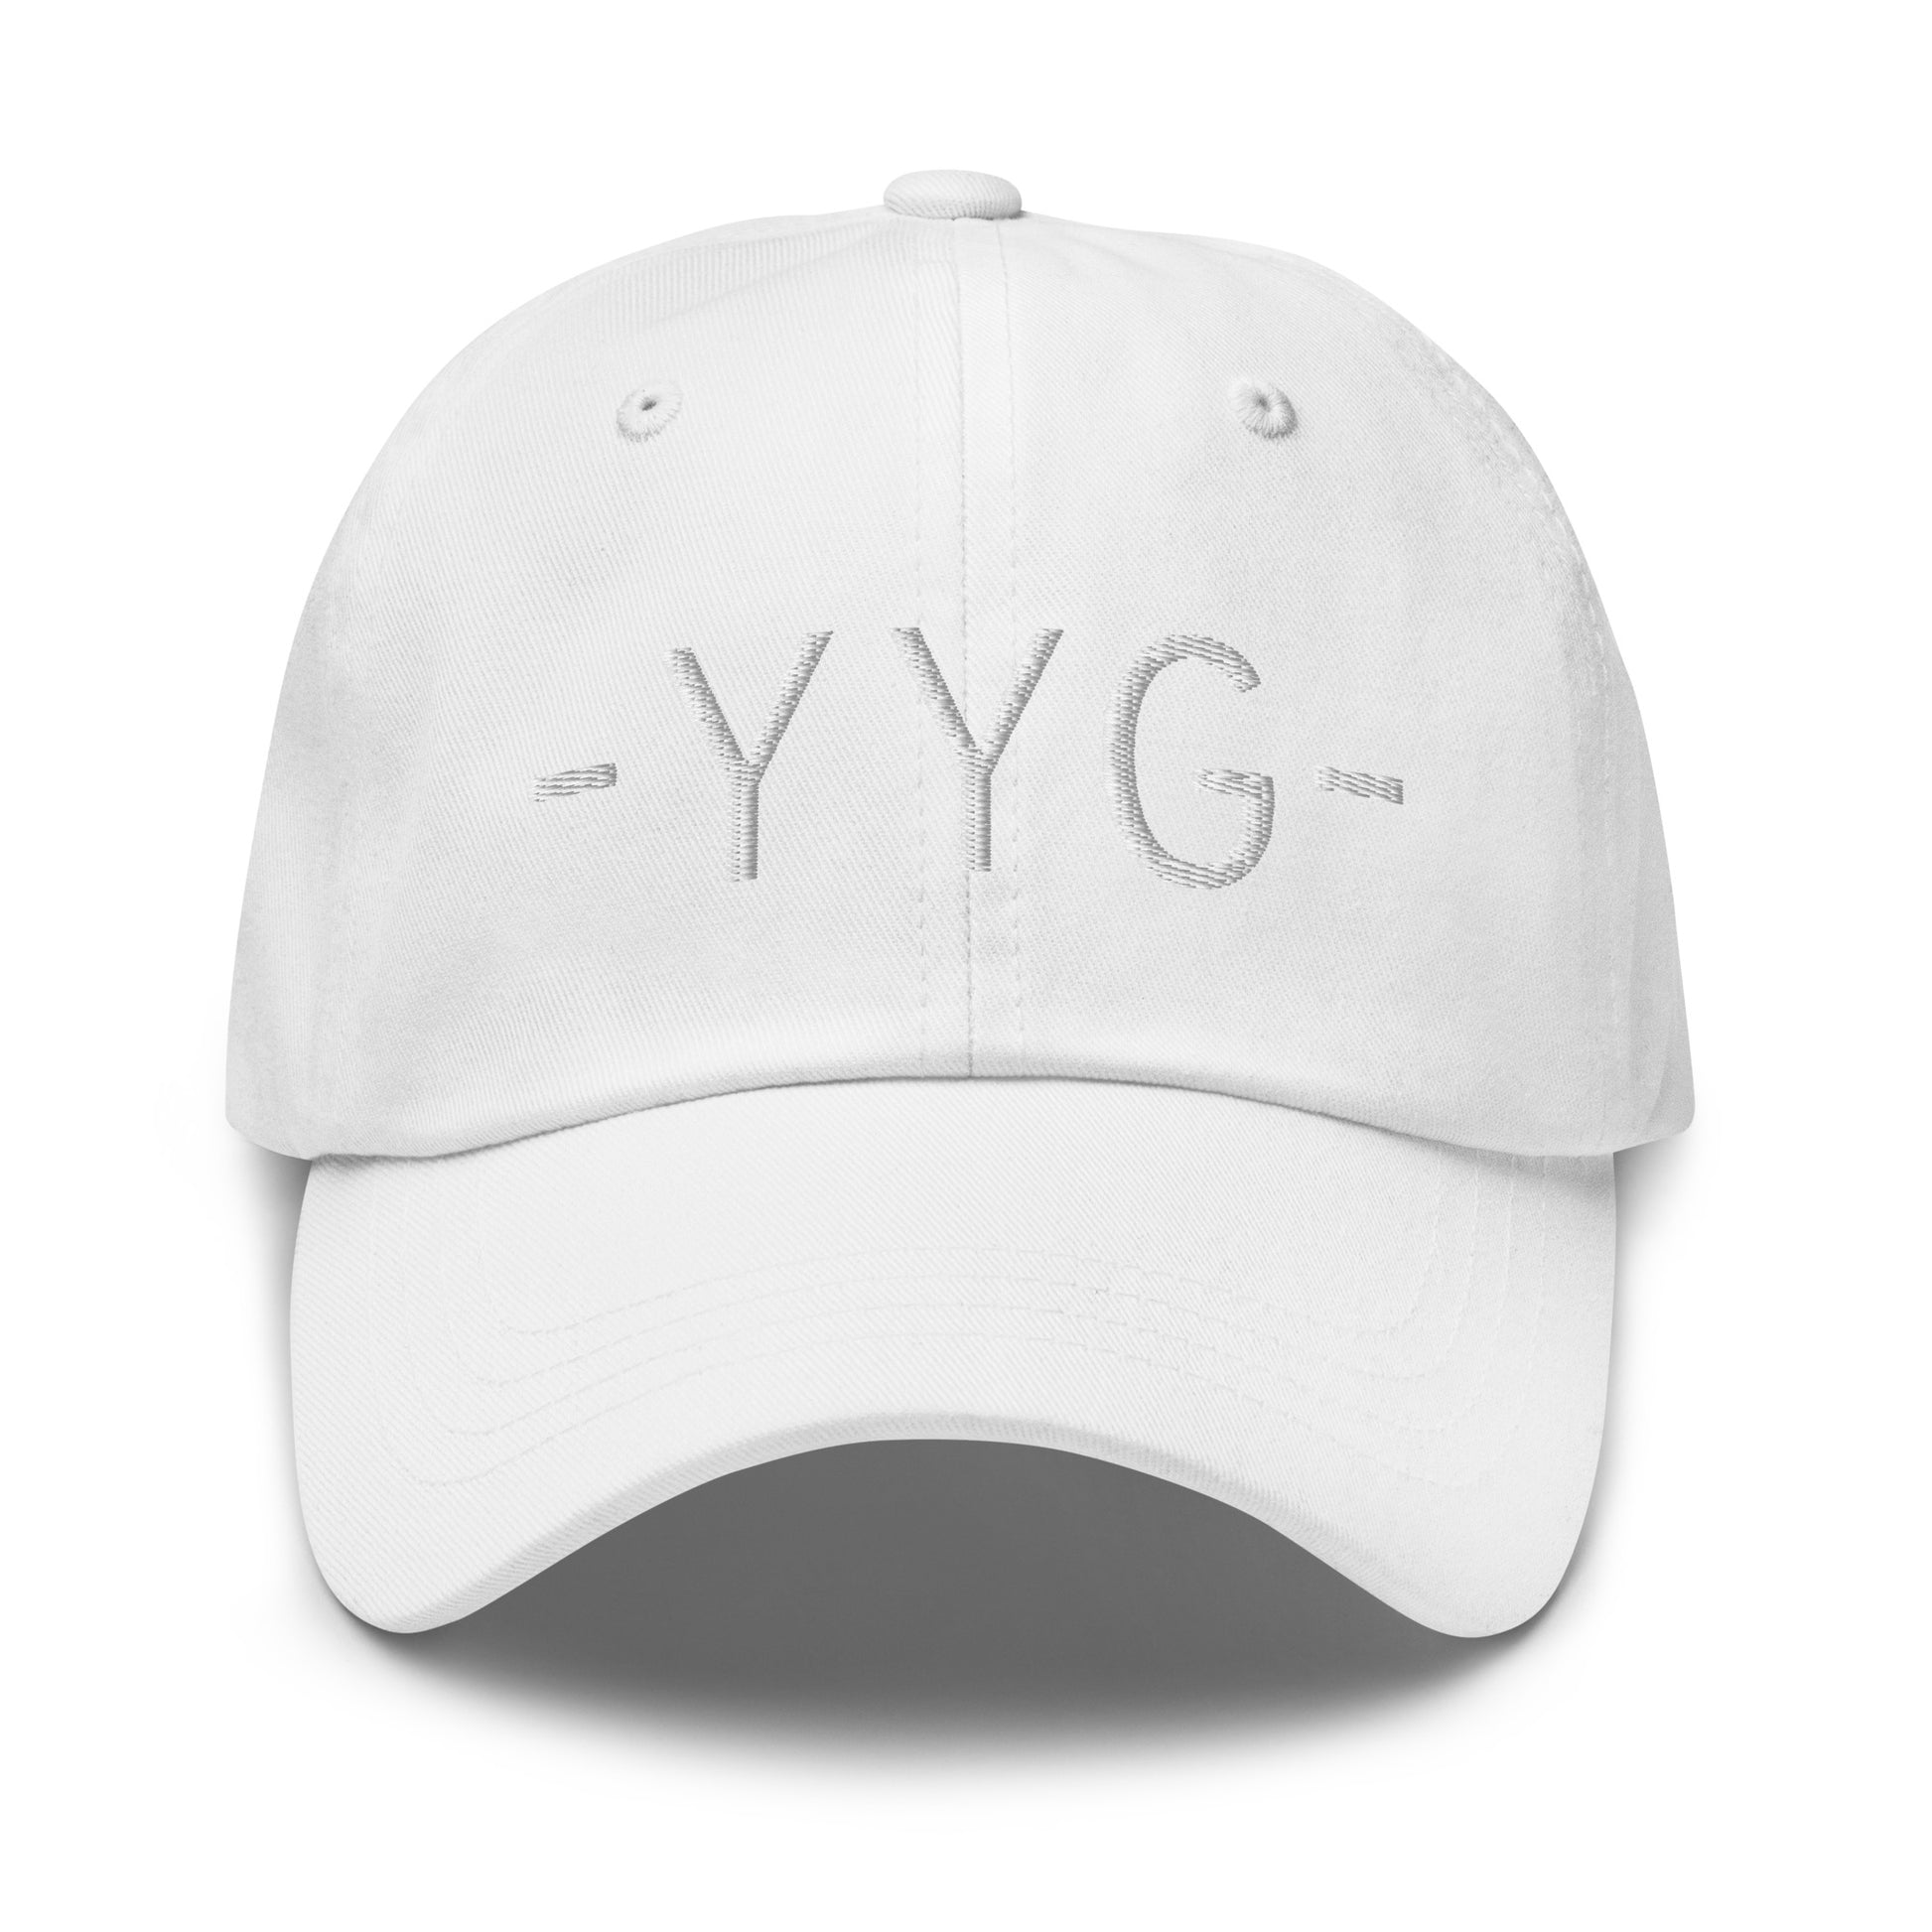 Souvenir Baseball Cap - White • YYG Charlottetown • YHM Designs - Image 29